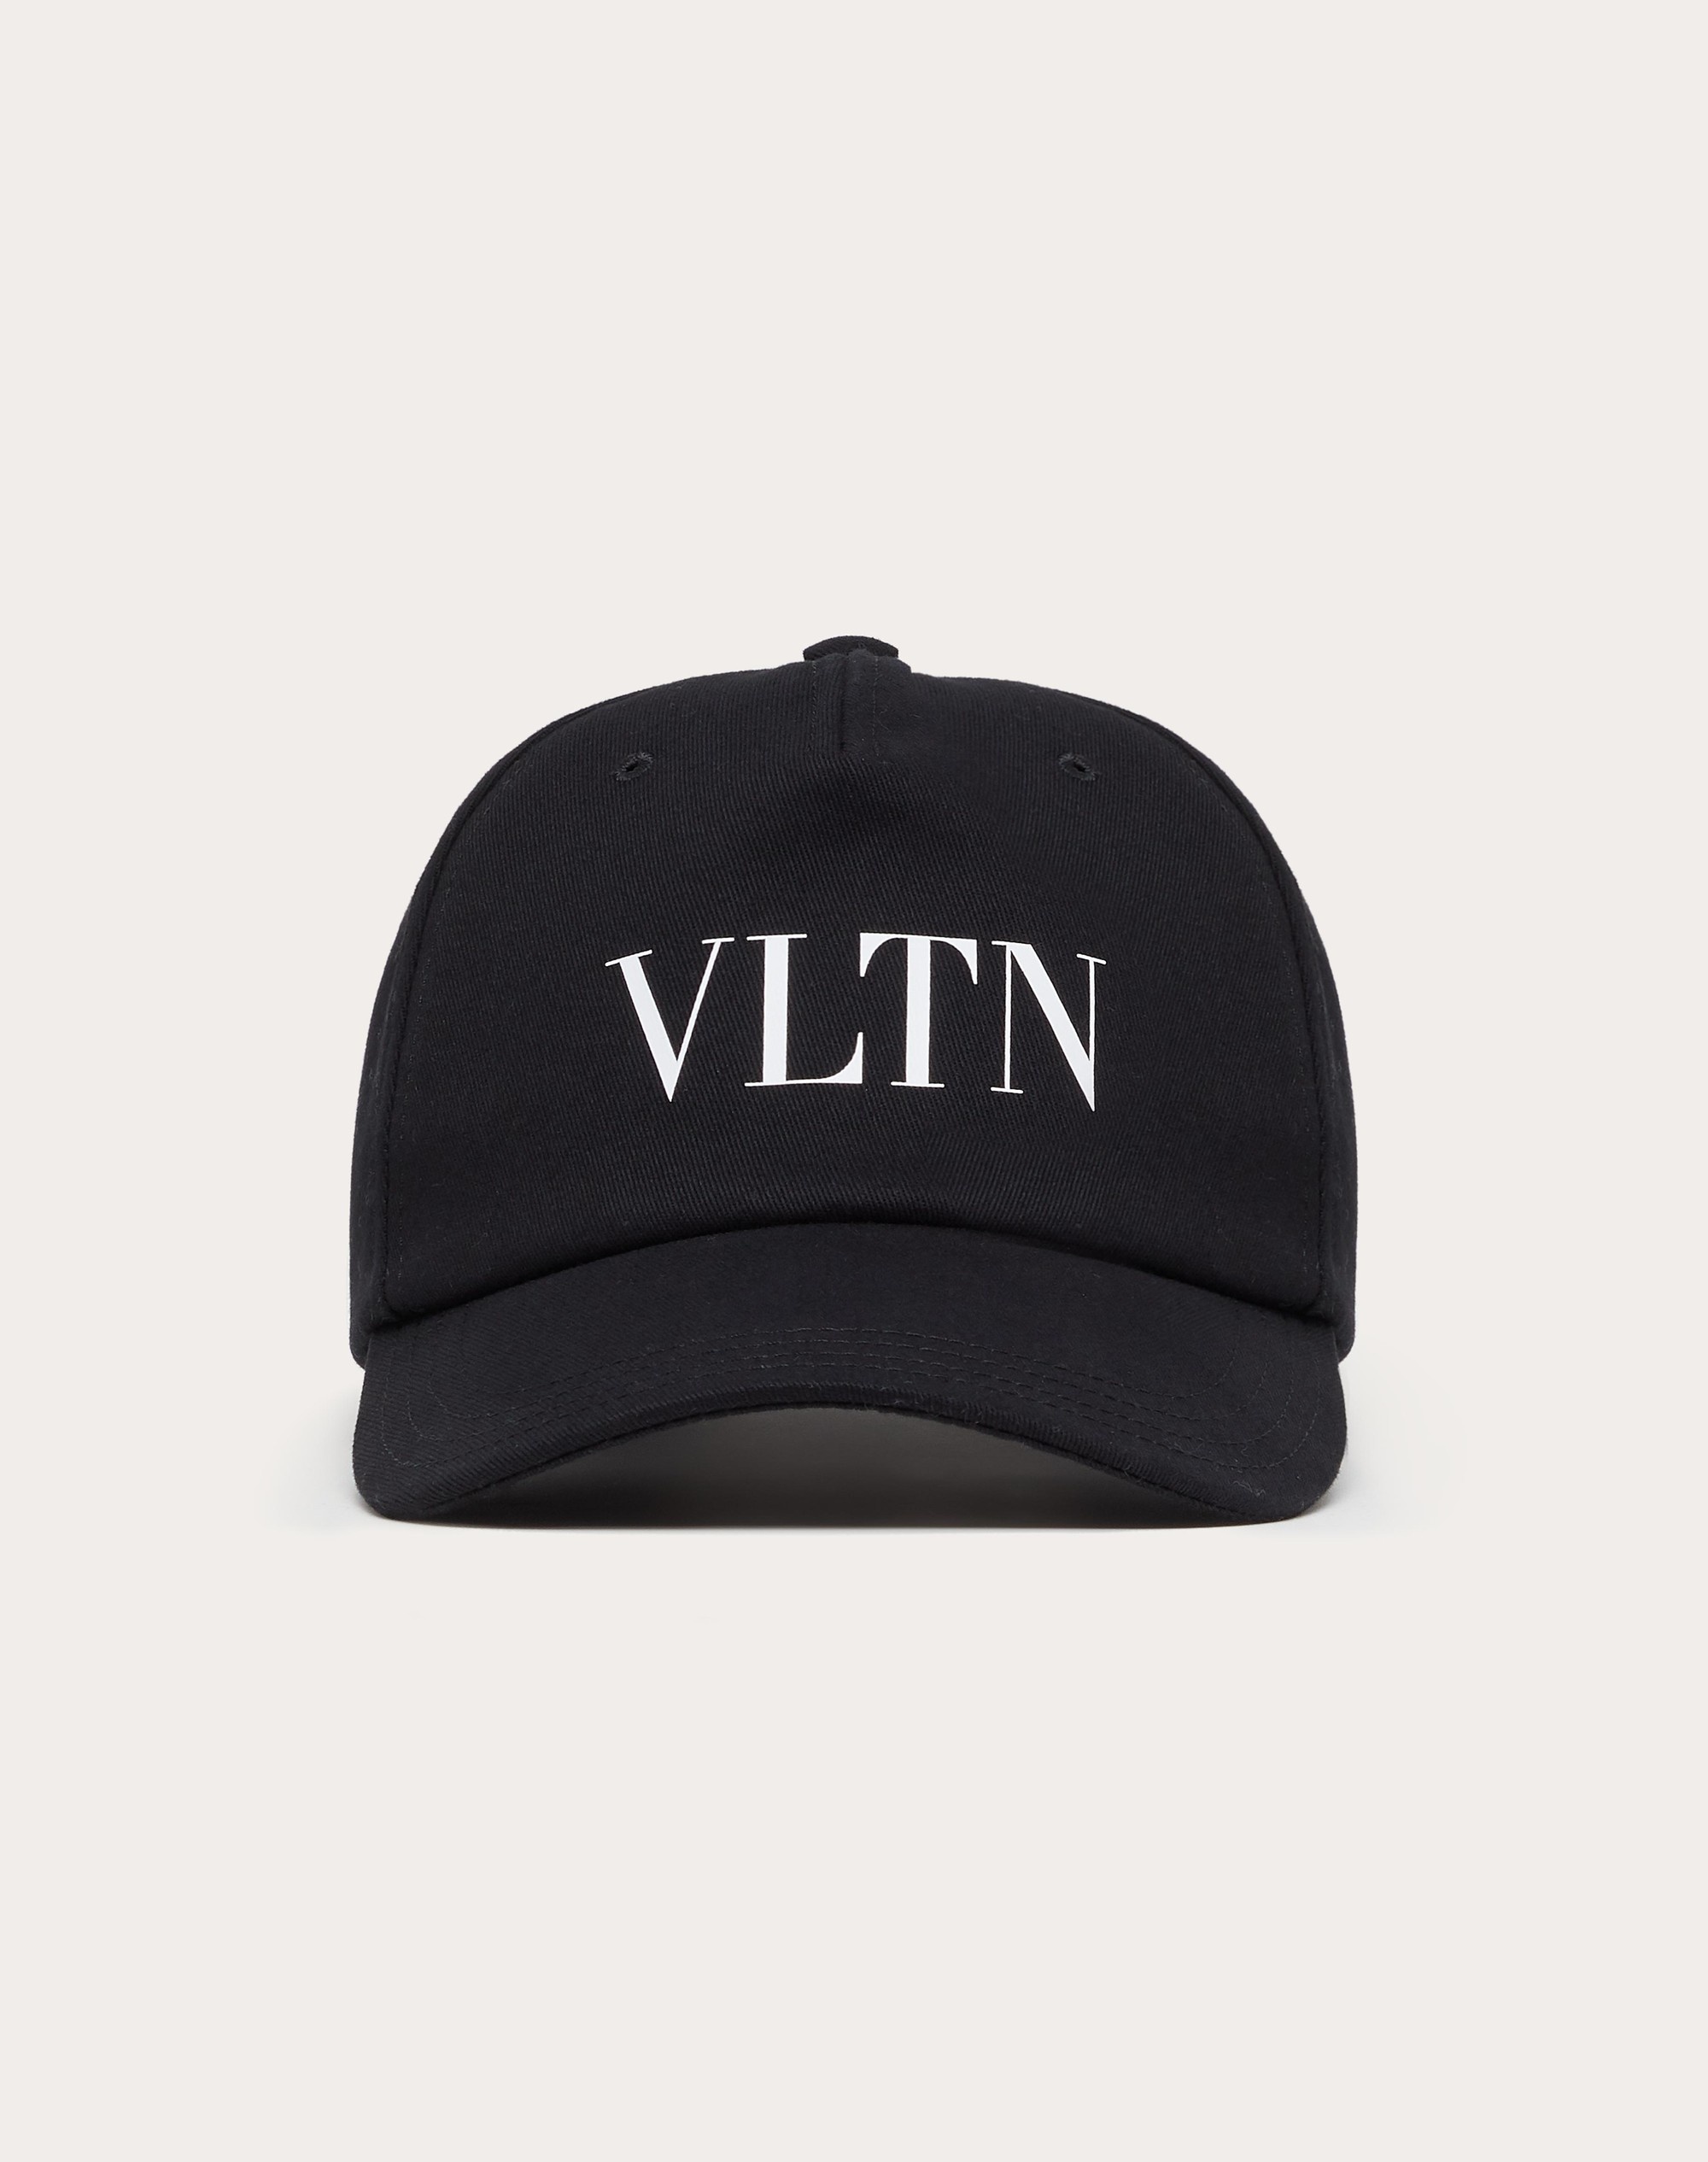 VLTN BASEBALL CAP - 1